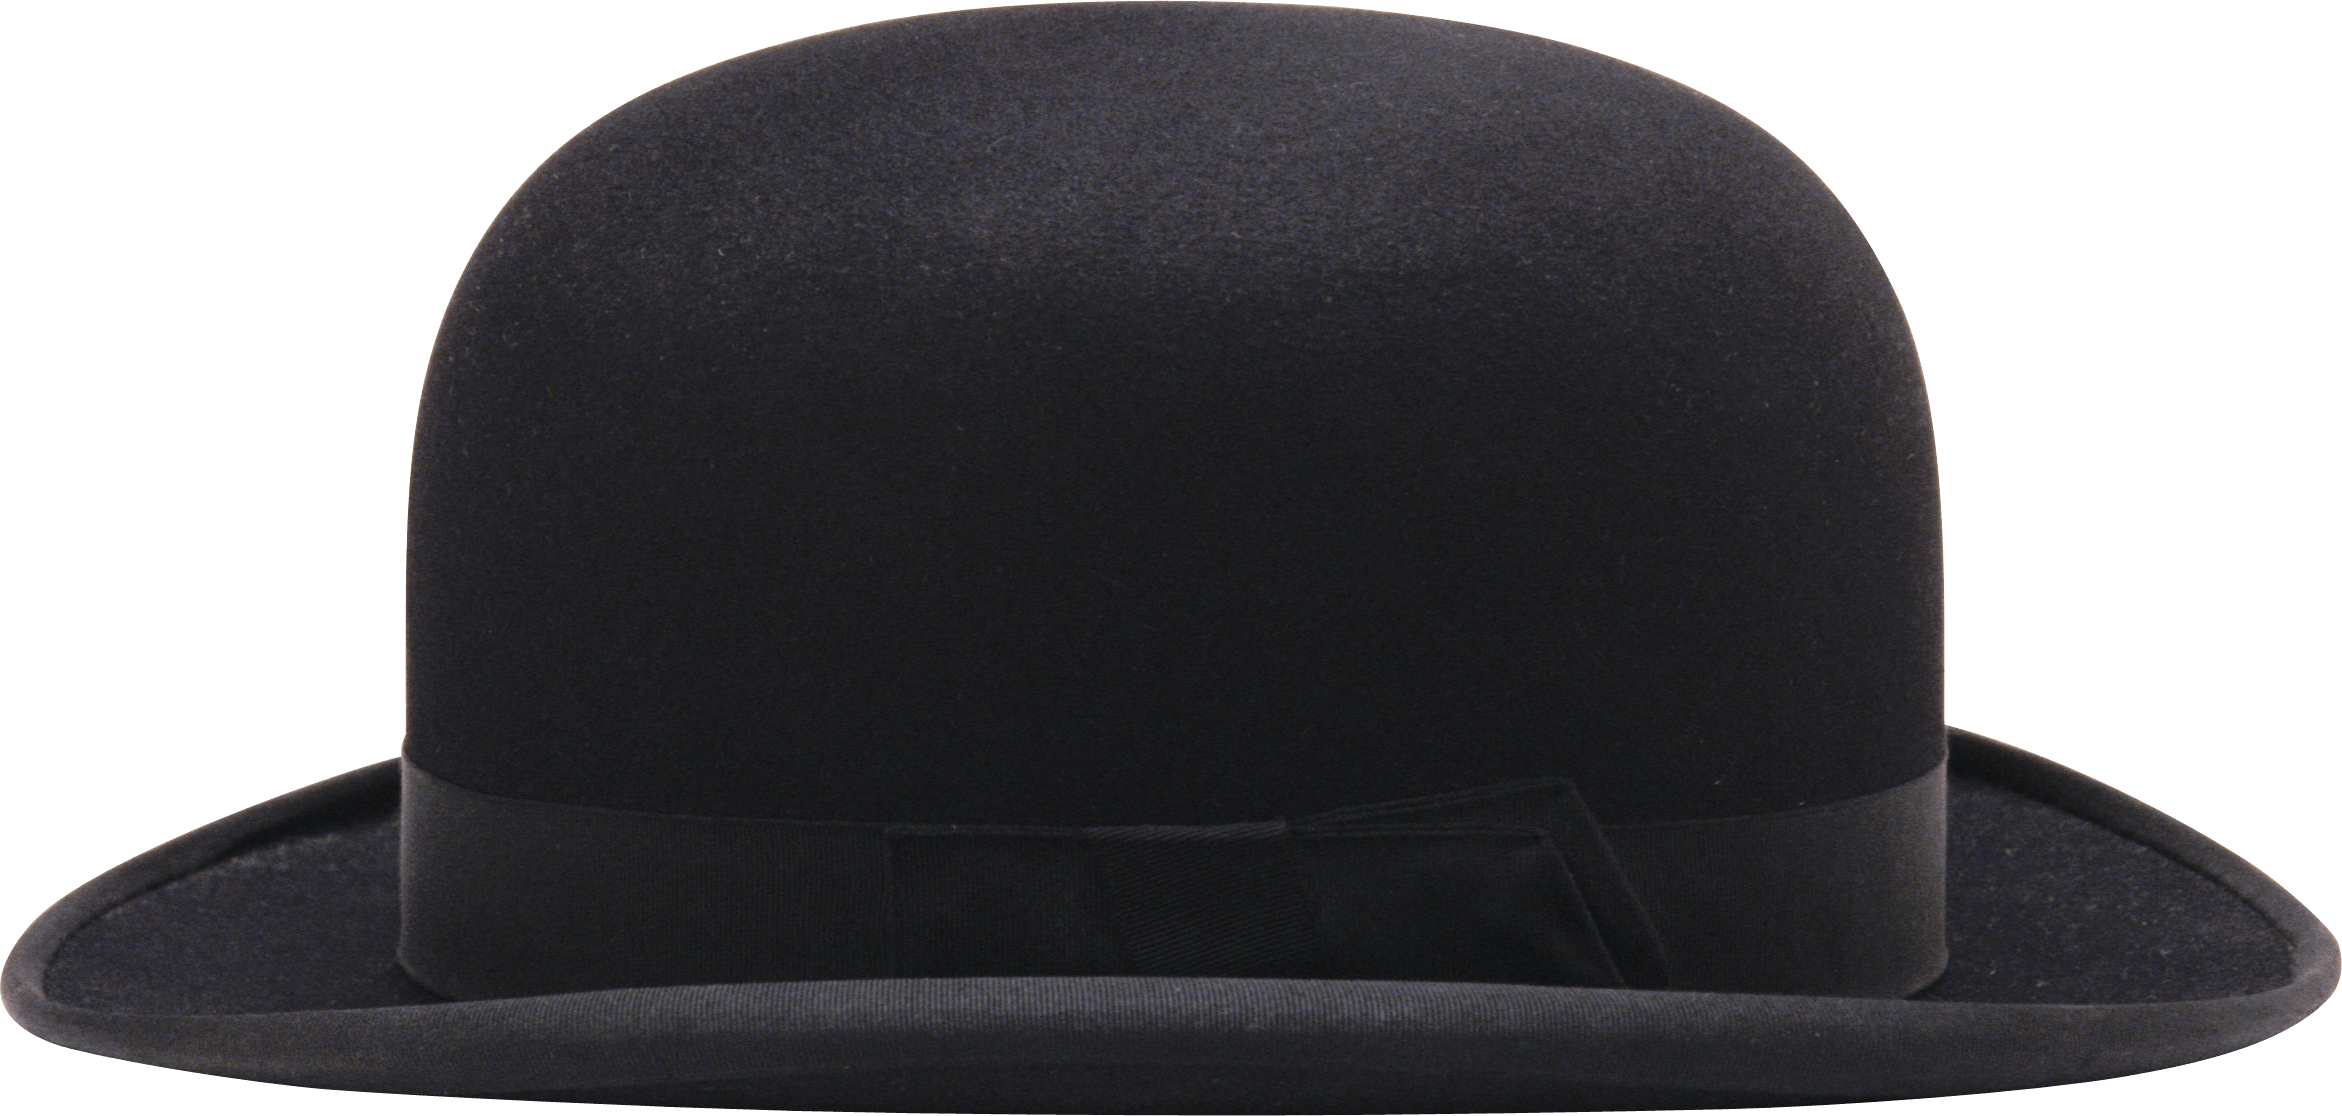 M 2 hat. Шляпа Аверилл hats 2 черный 54. Шляпа "котелок" черная. Шляпа котелок мужская. Шляпка без фона.